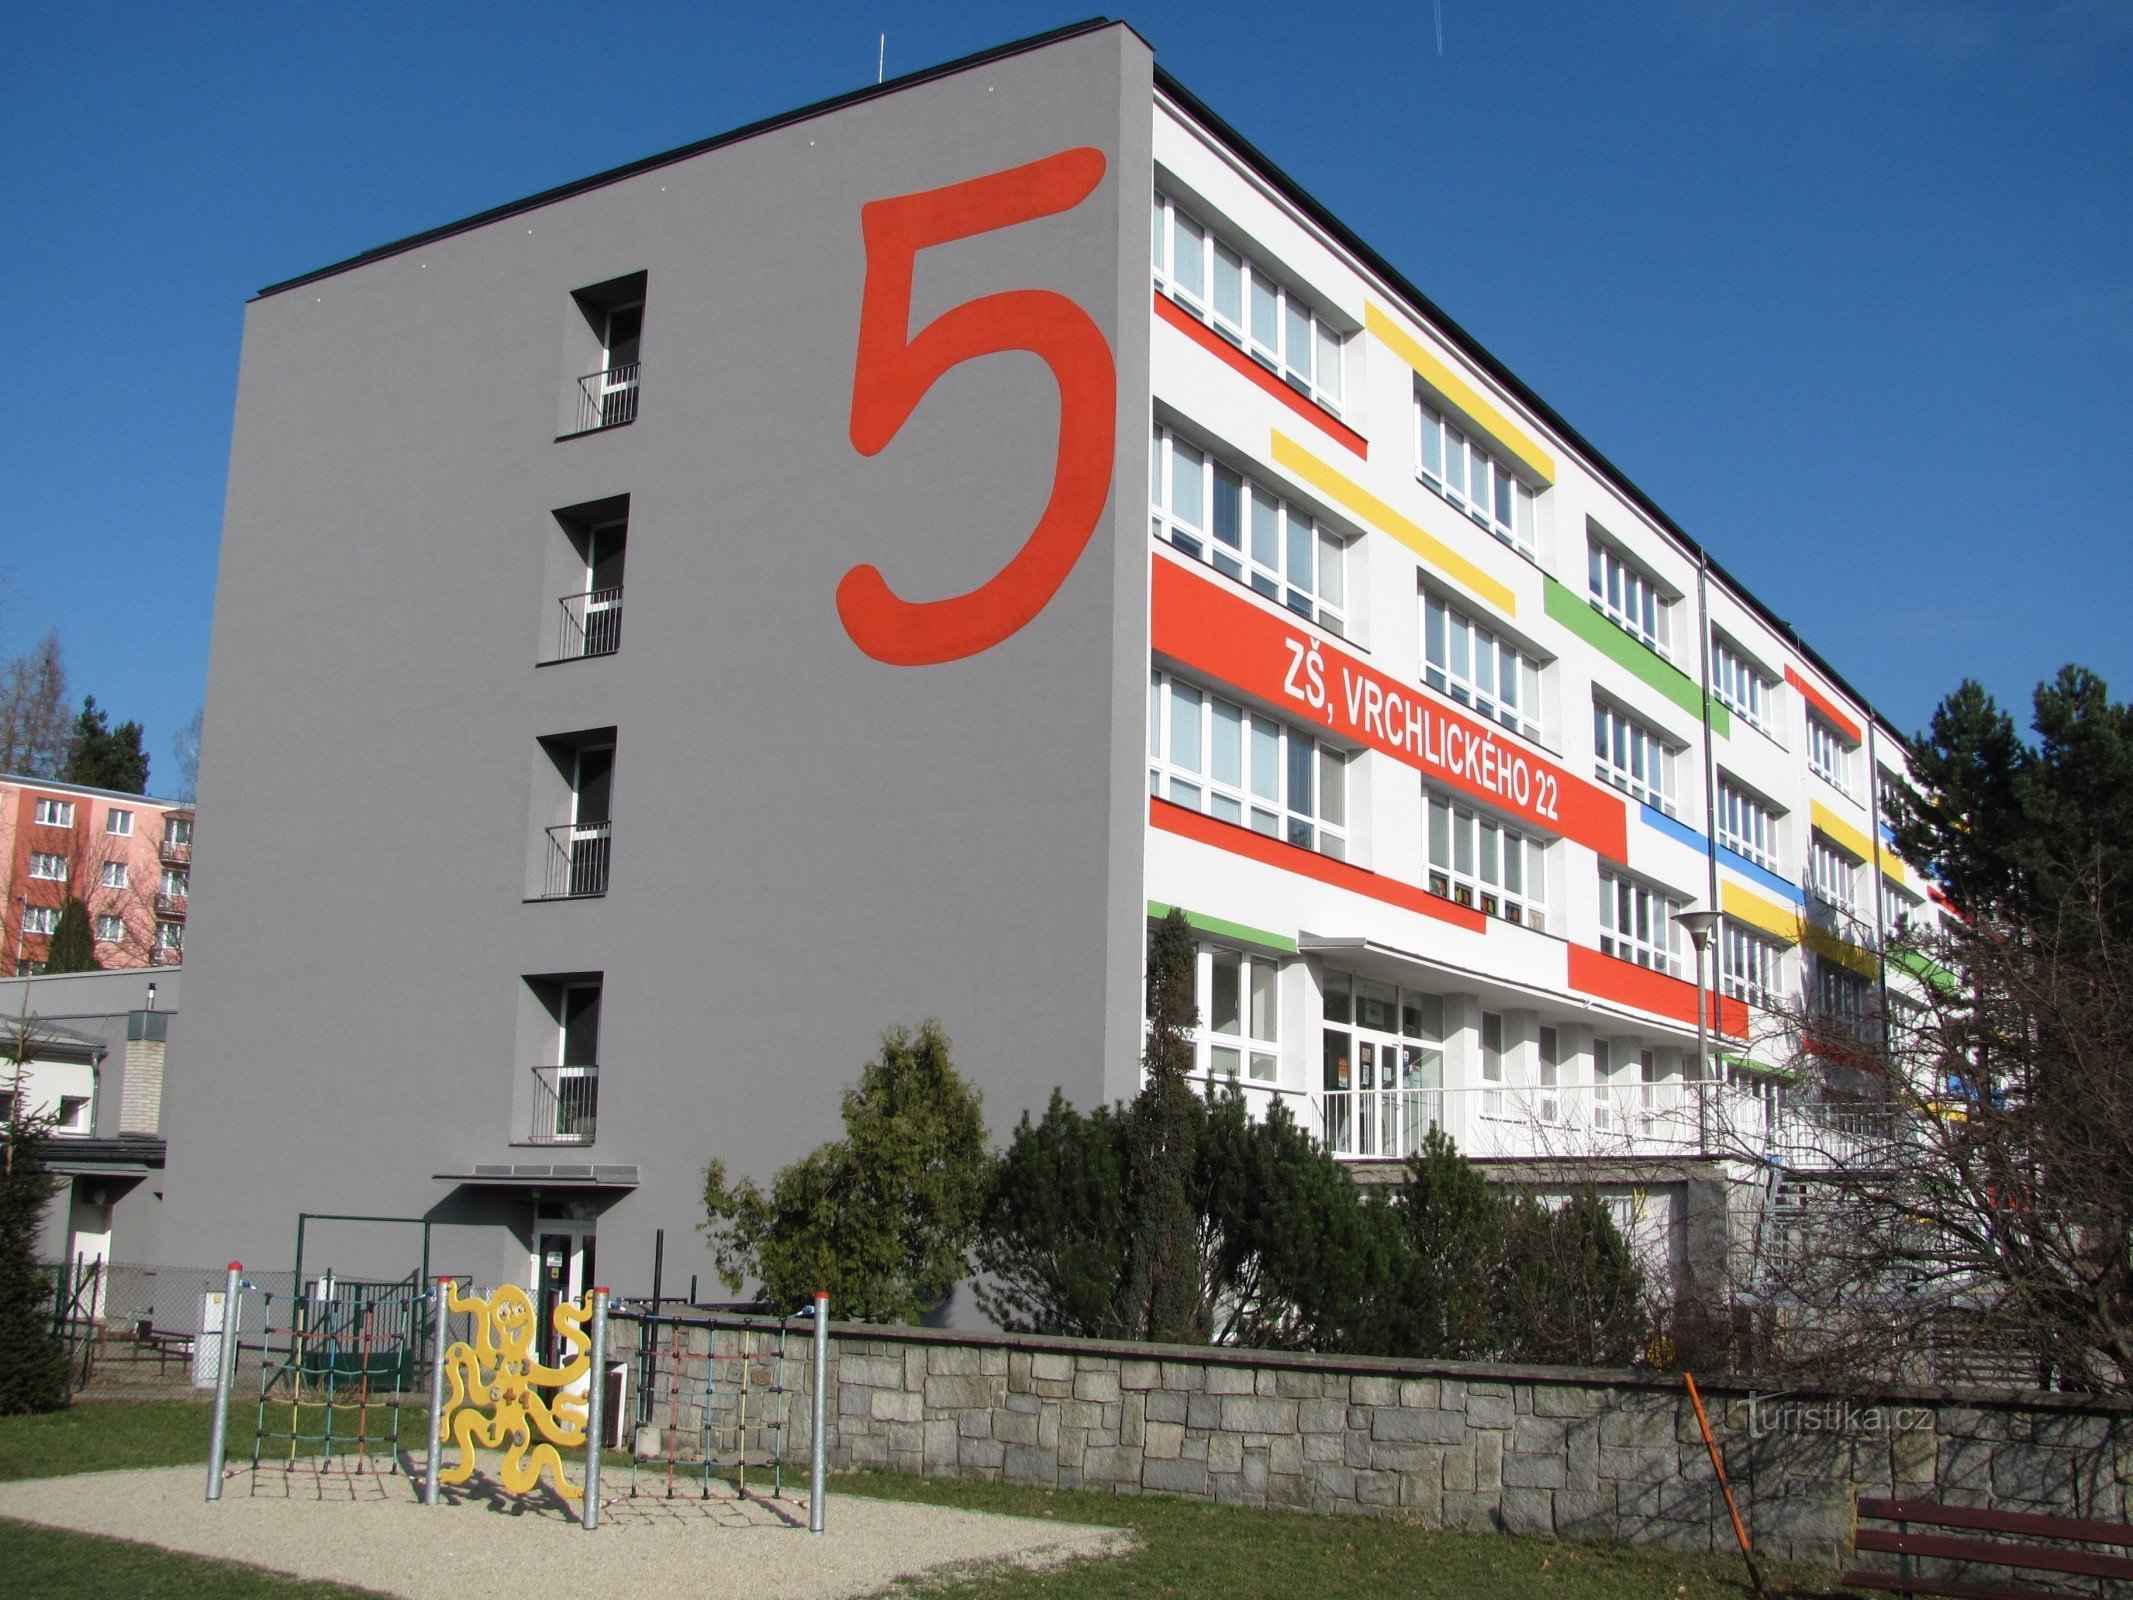 Šumperk – bygning af den 5. folkeskole og børns 8D legeplads